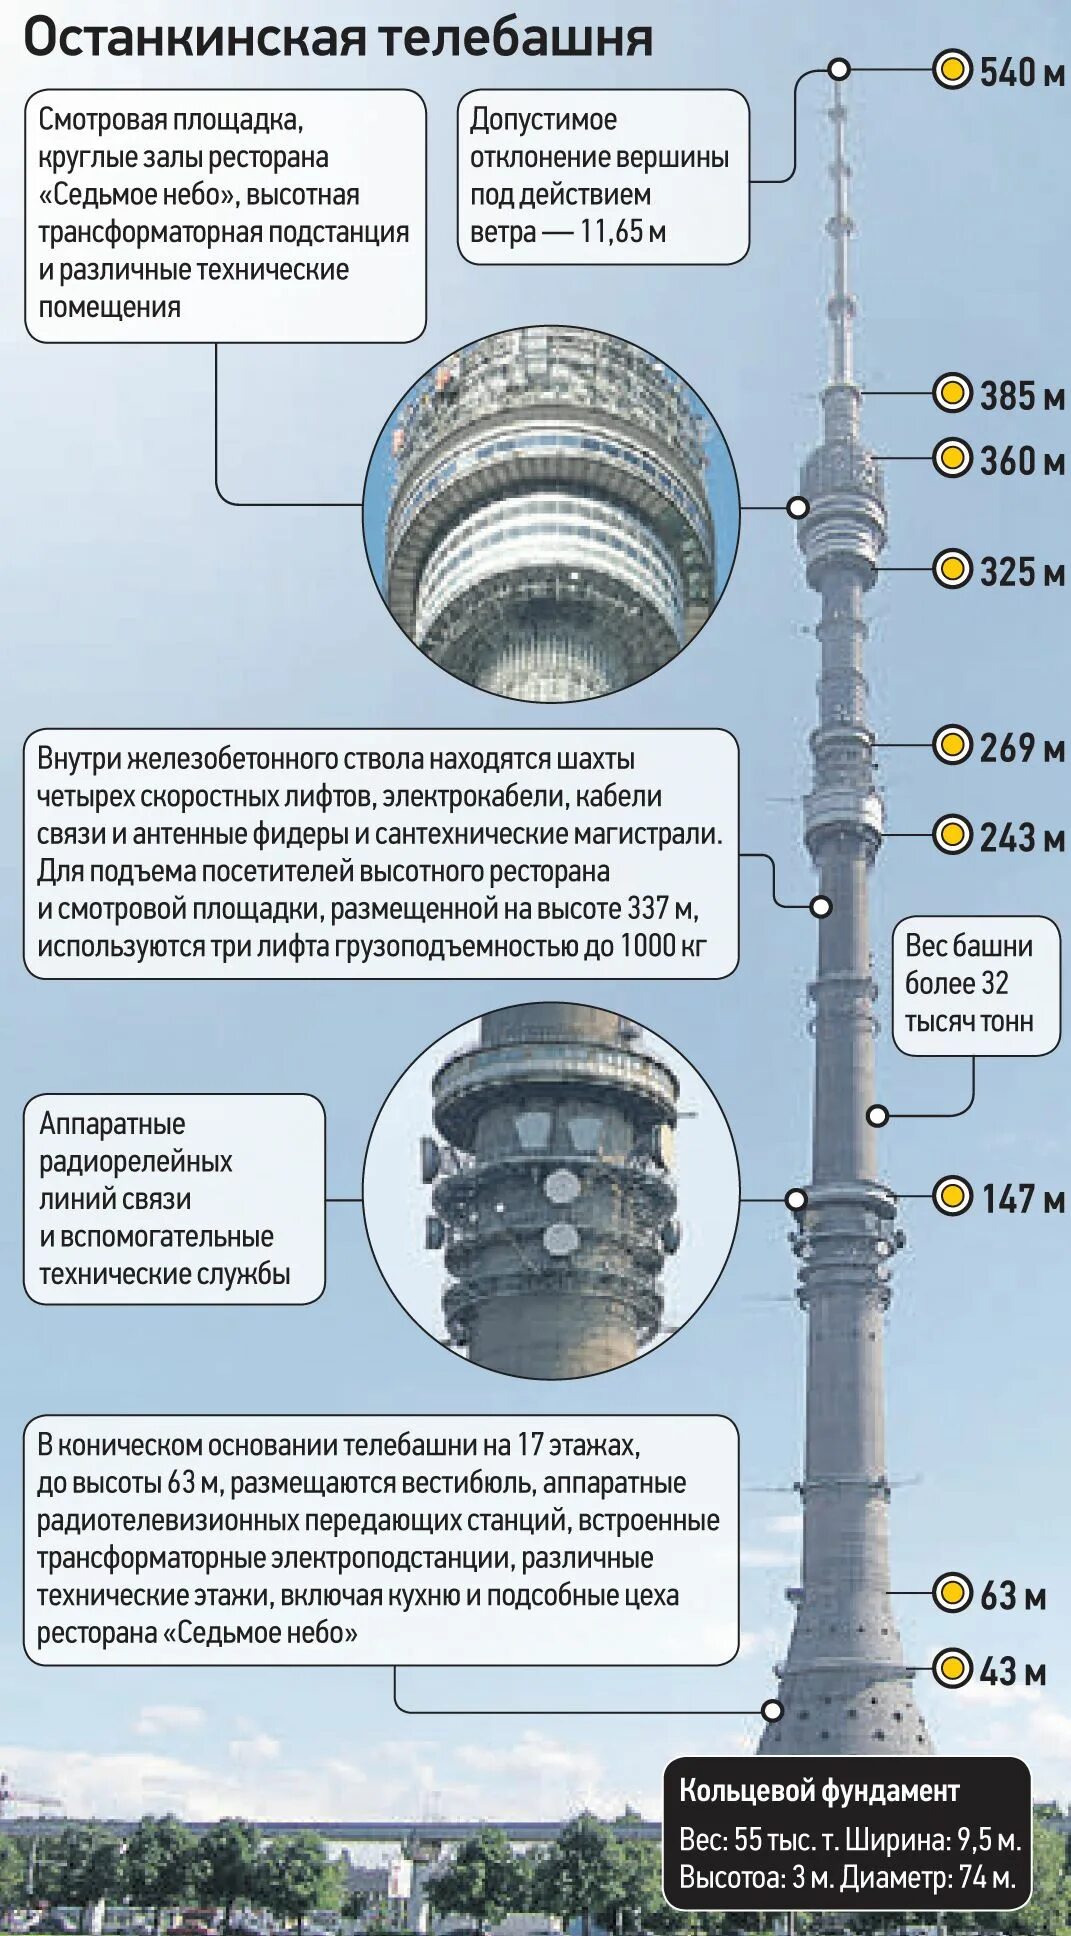 Сколько высота останкинской. Высота Останкинской башни. Высота телебашни Останкино в Москве. Высота Останкинской башни в метрах. Диаметр Останкинской башни.